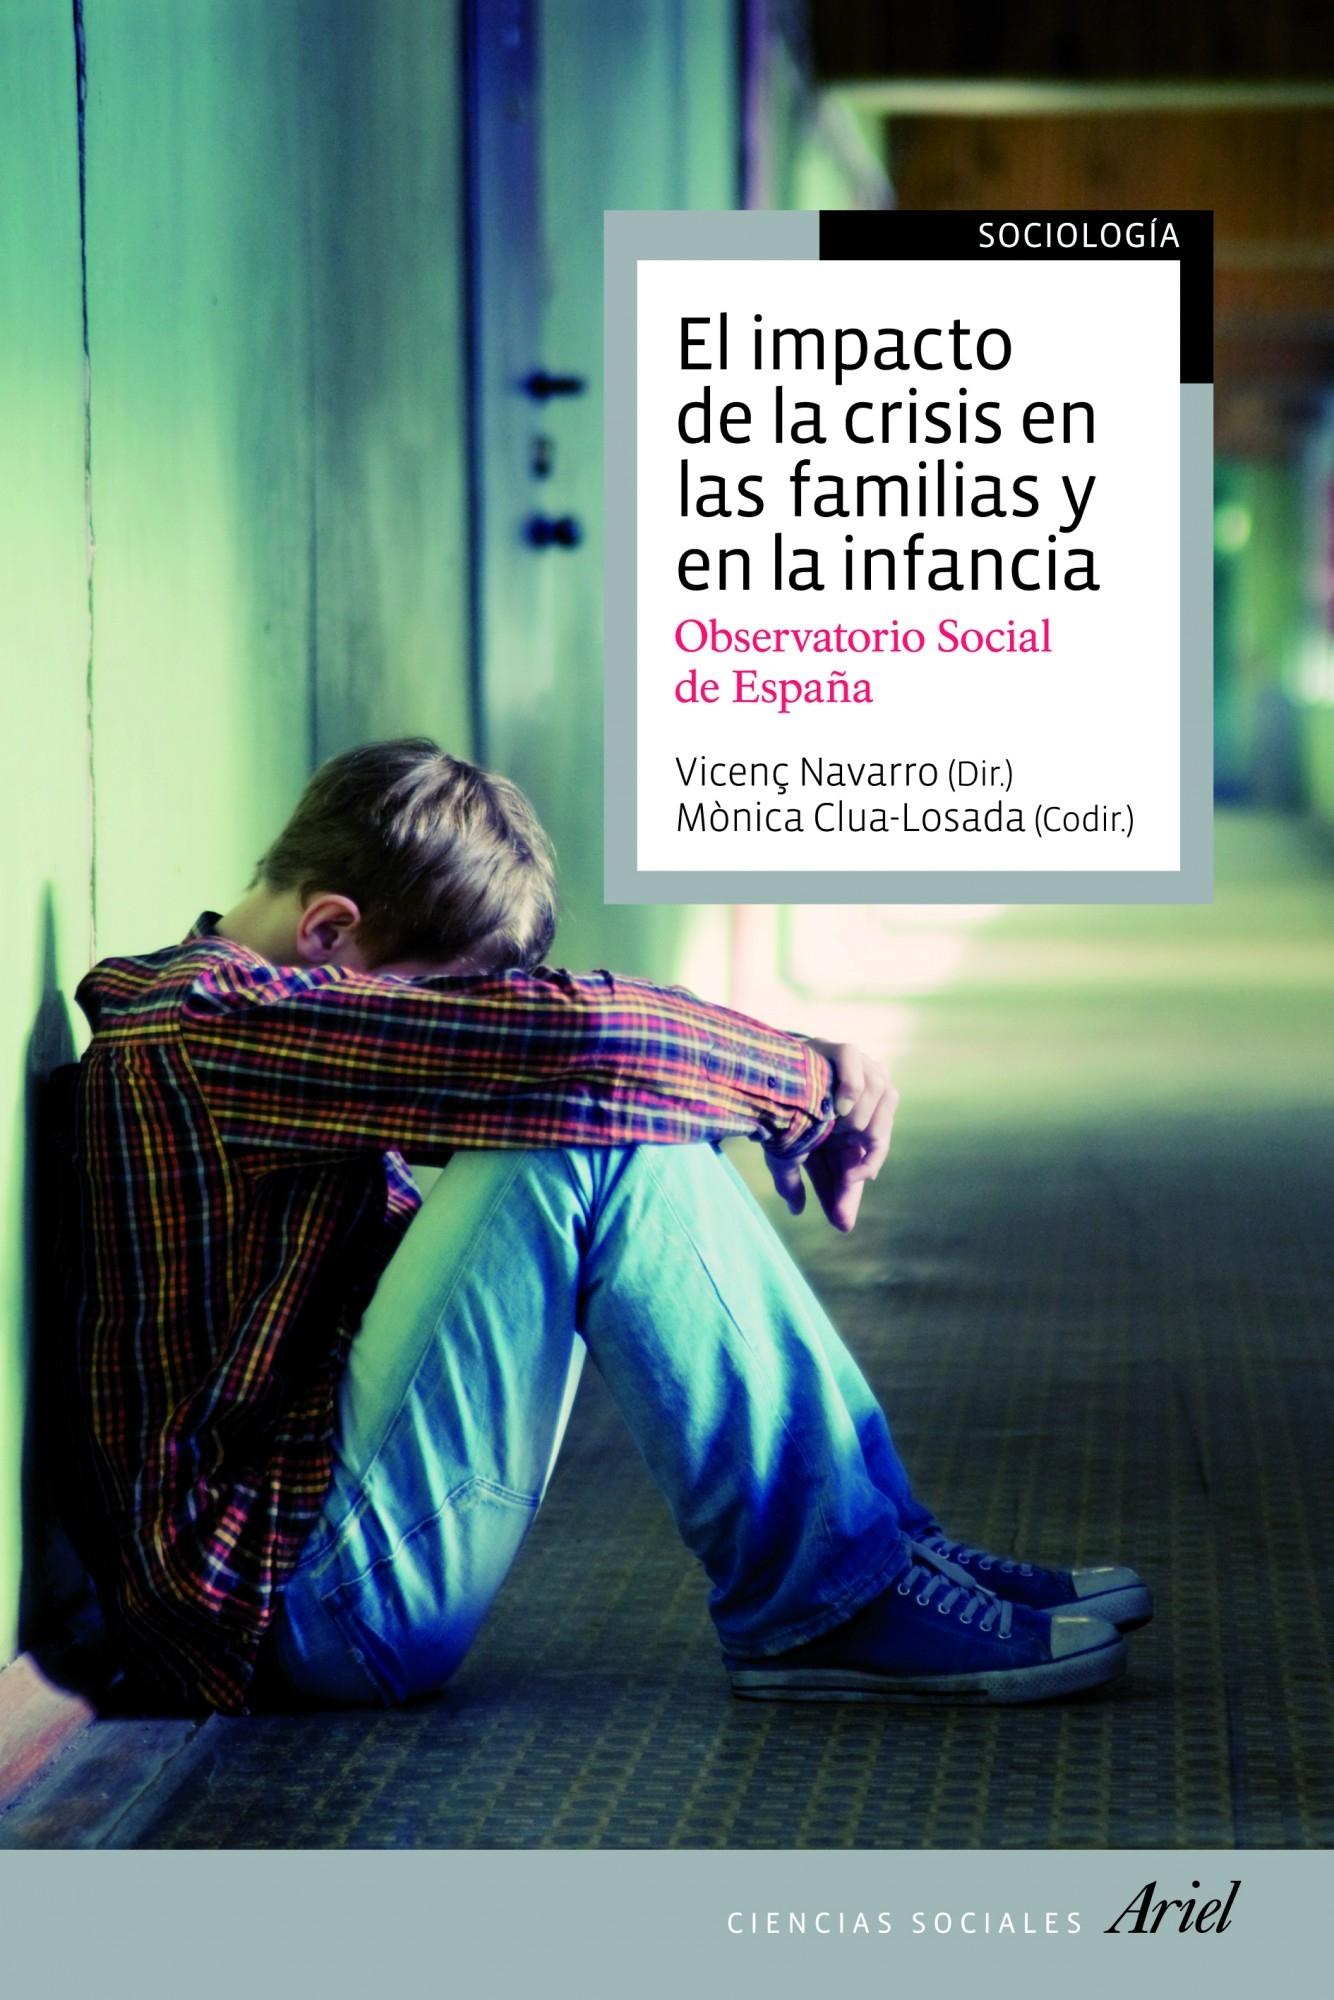 El Impacto de la Crisis en las Familias y en la Infancia "Observatorio Social de España". 